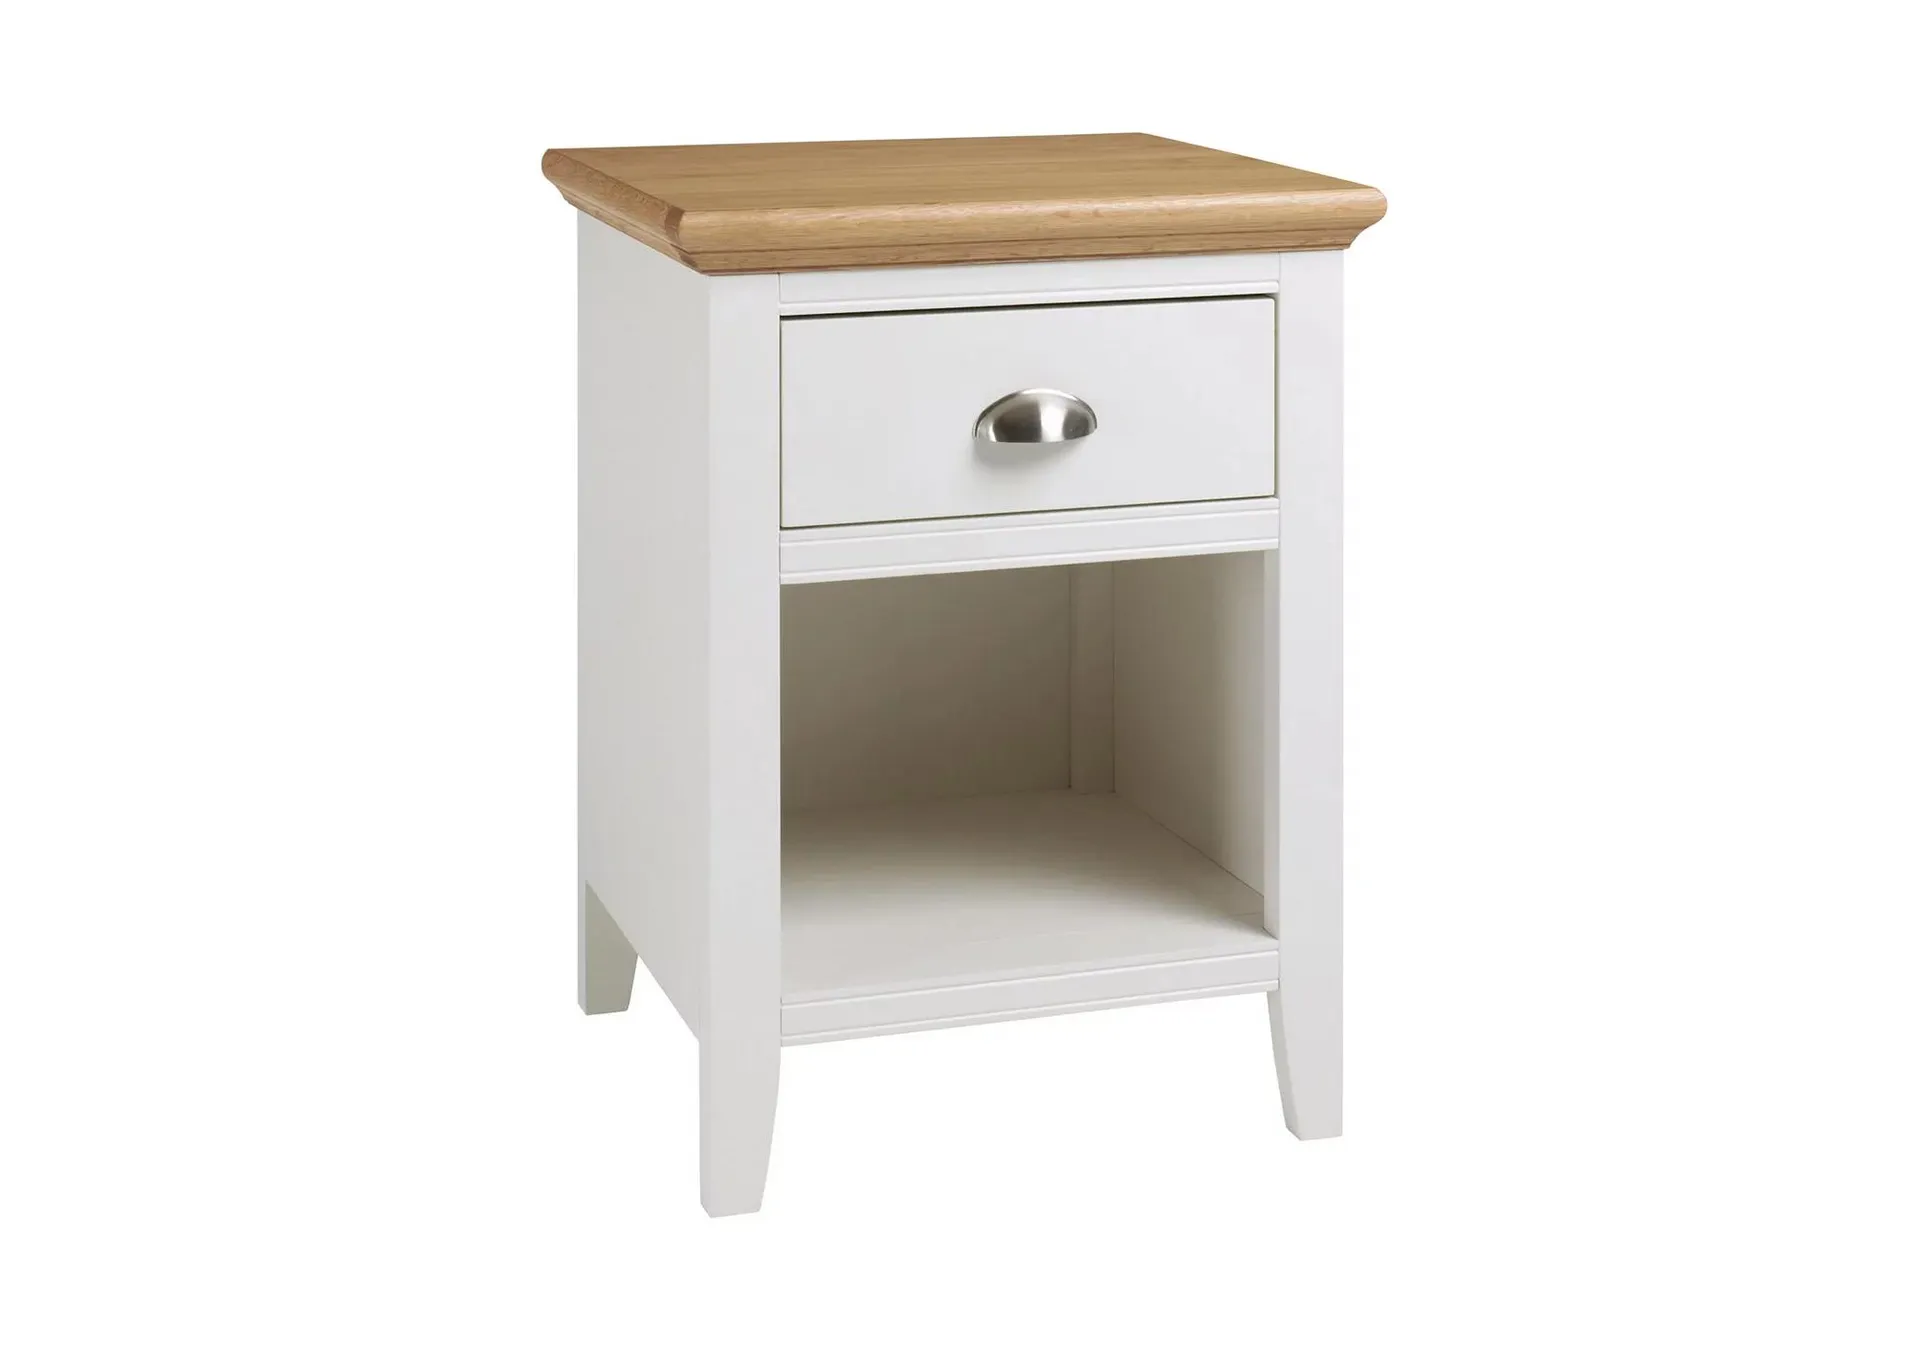 https://www.furniturevillage.co.uk/emily-1-drawer-nightstand/ZFRSP000000000006210.html?dwvar_ZFRSP000000000006210_color=ivory-and-oak